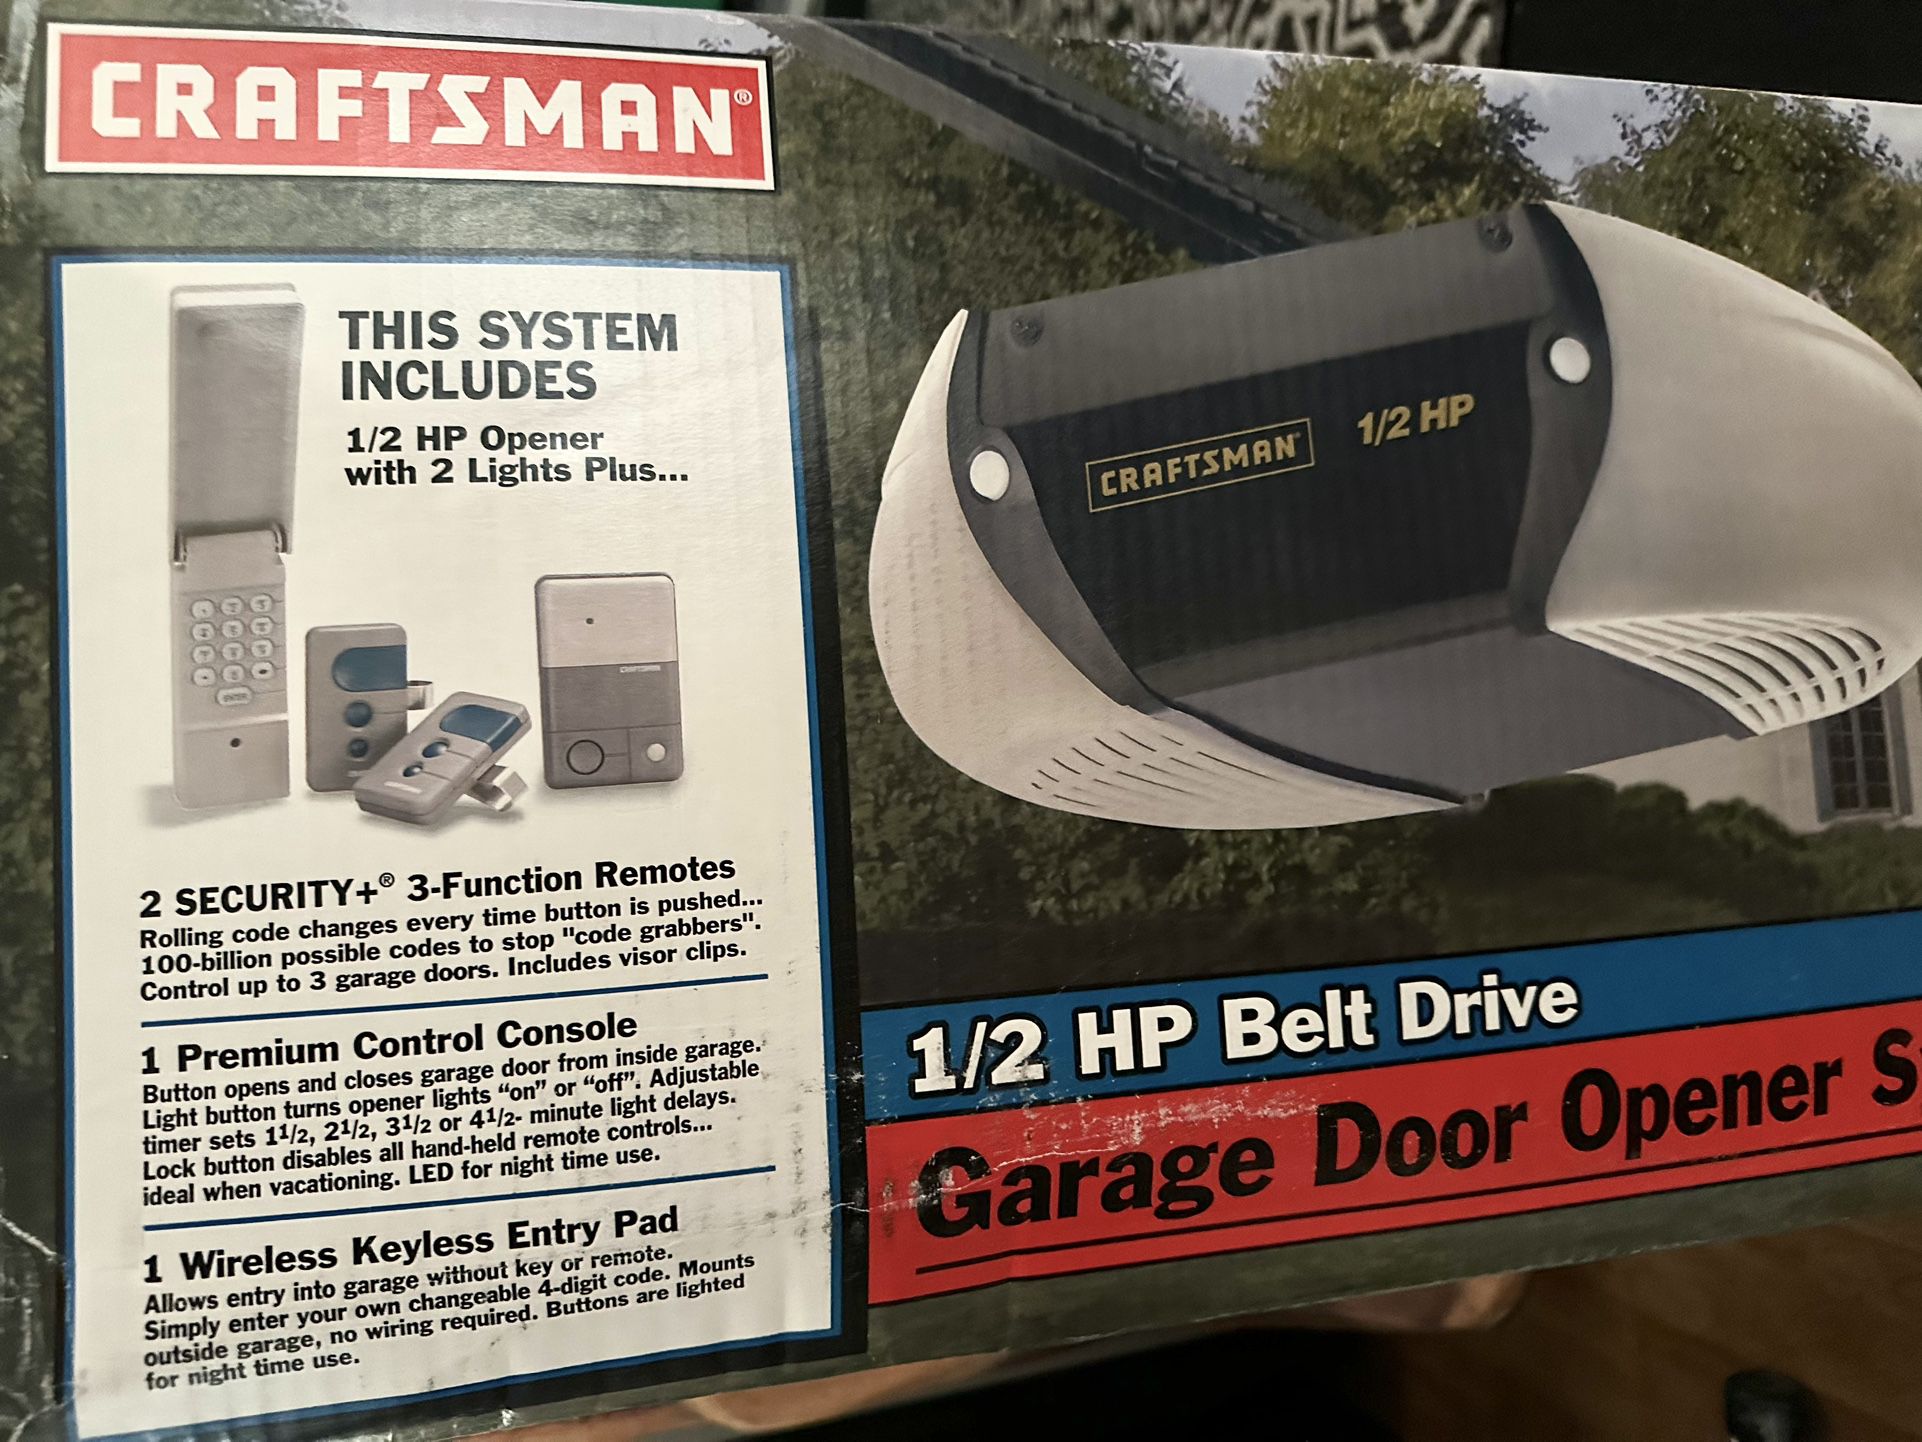 NEW IN BOX- UNOPENED GARAGE DOOR OPENER